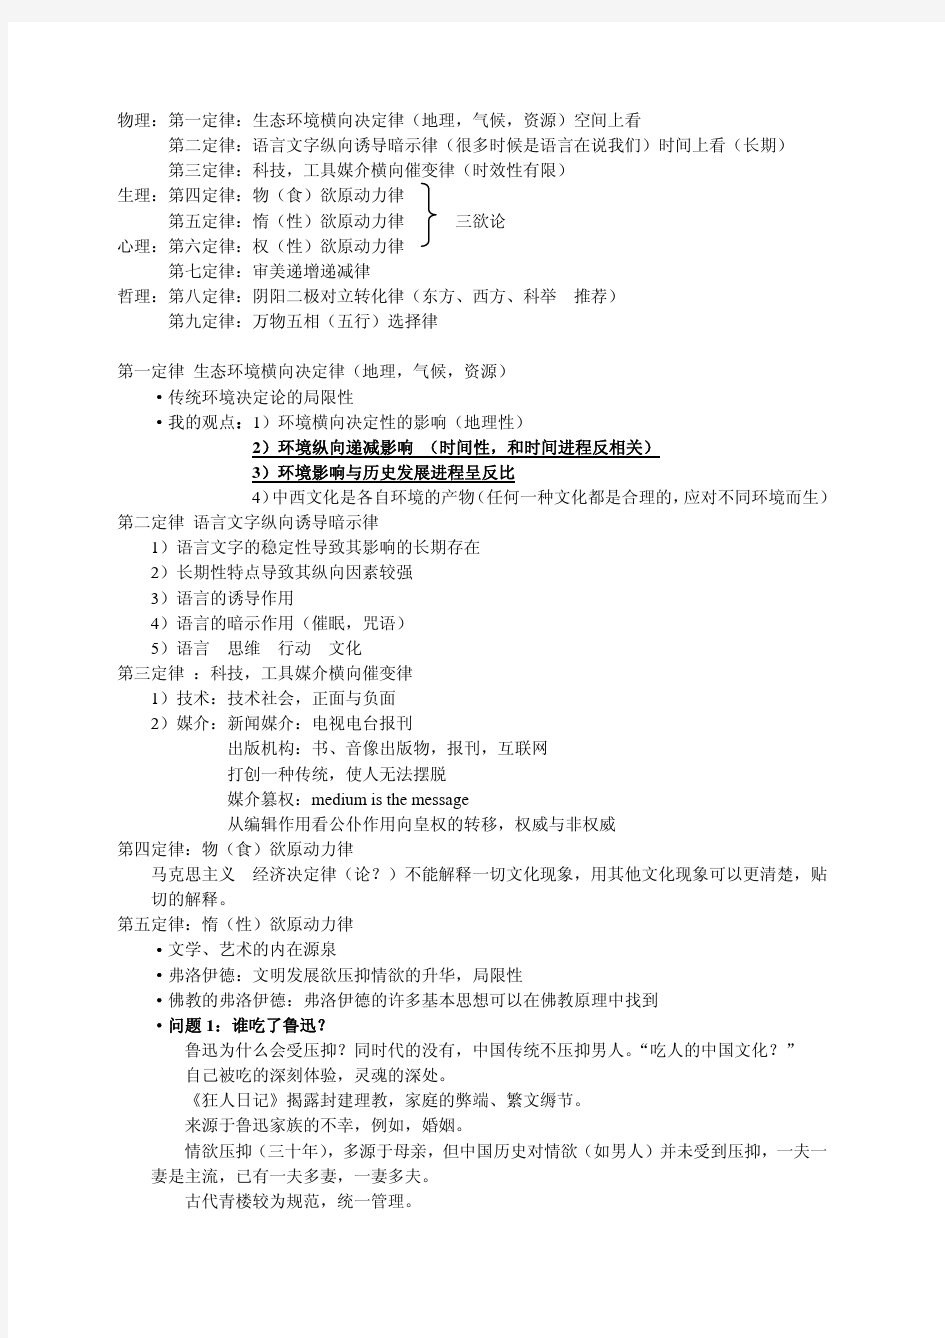 北京大学中西文化比较课程笔记